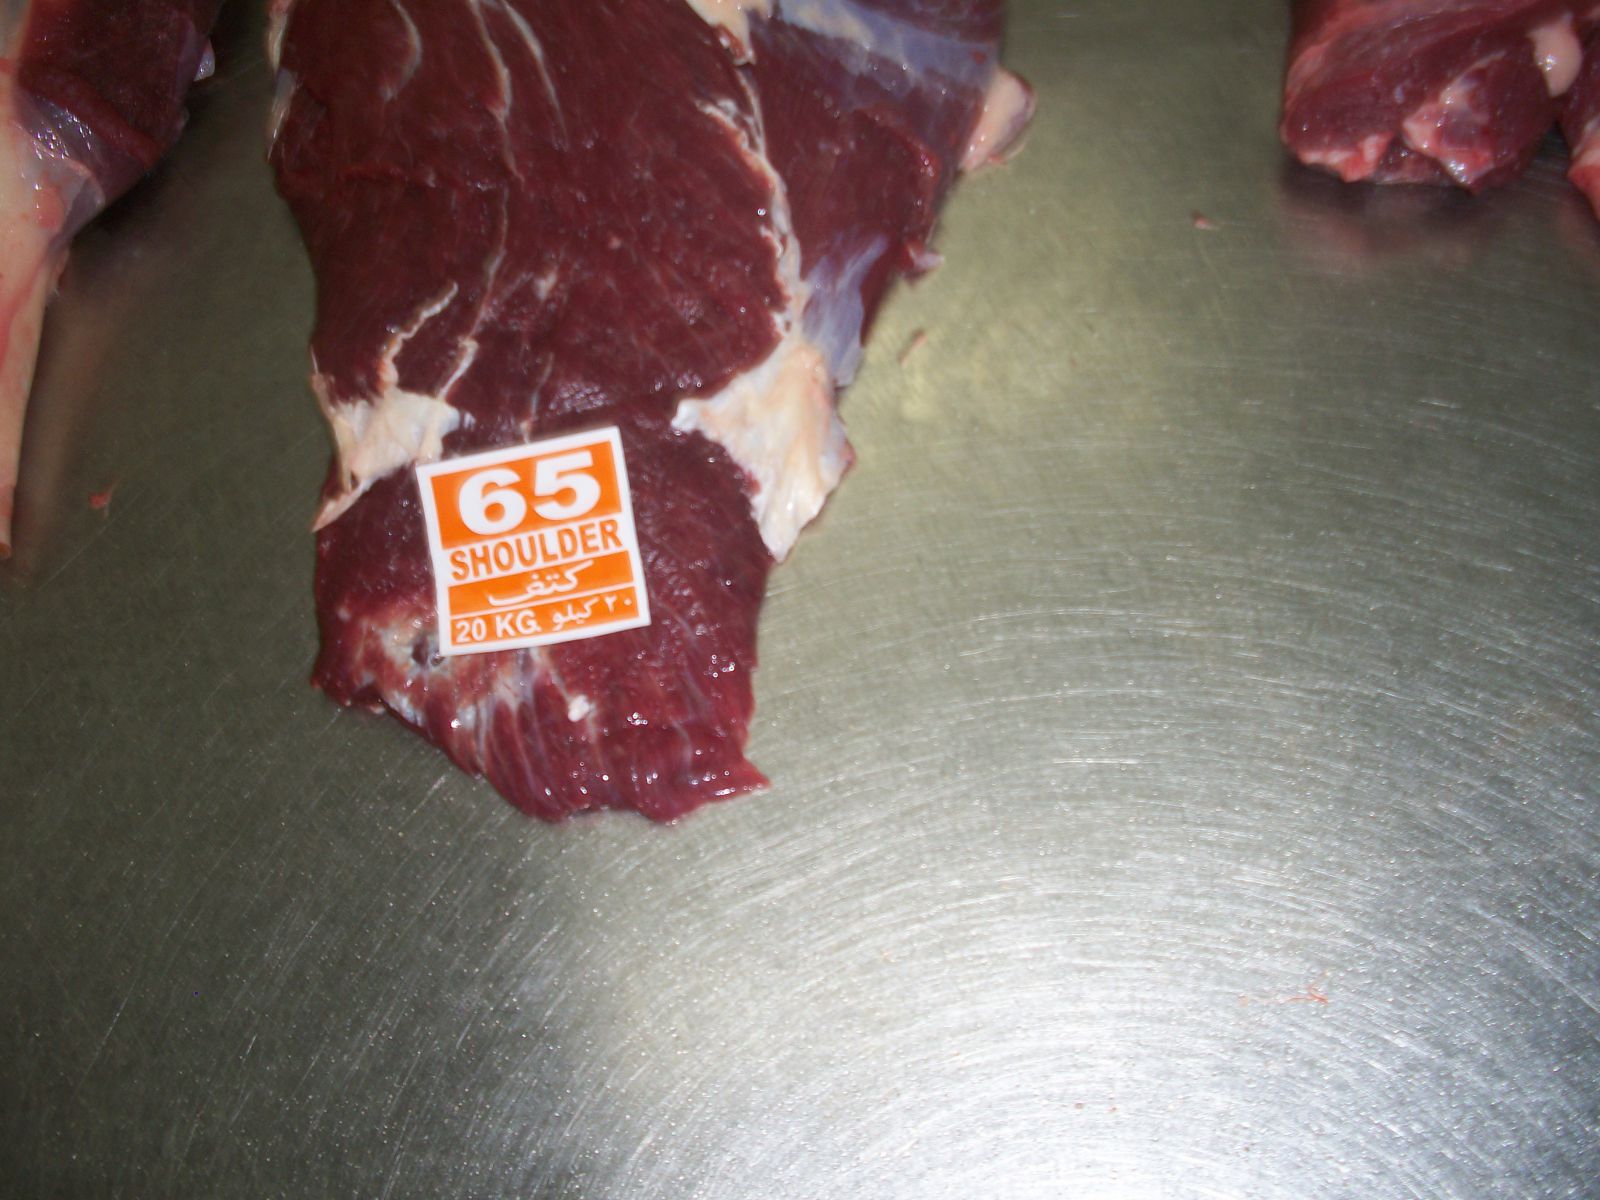 Nạc vai mã 65 - Chuyên cung cấp thịt trâu TPHCM